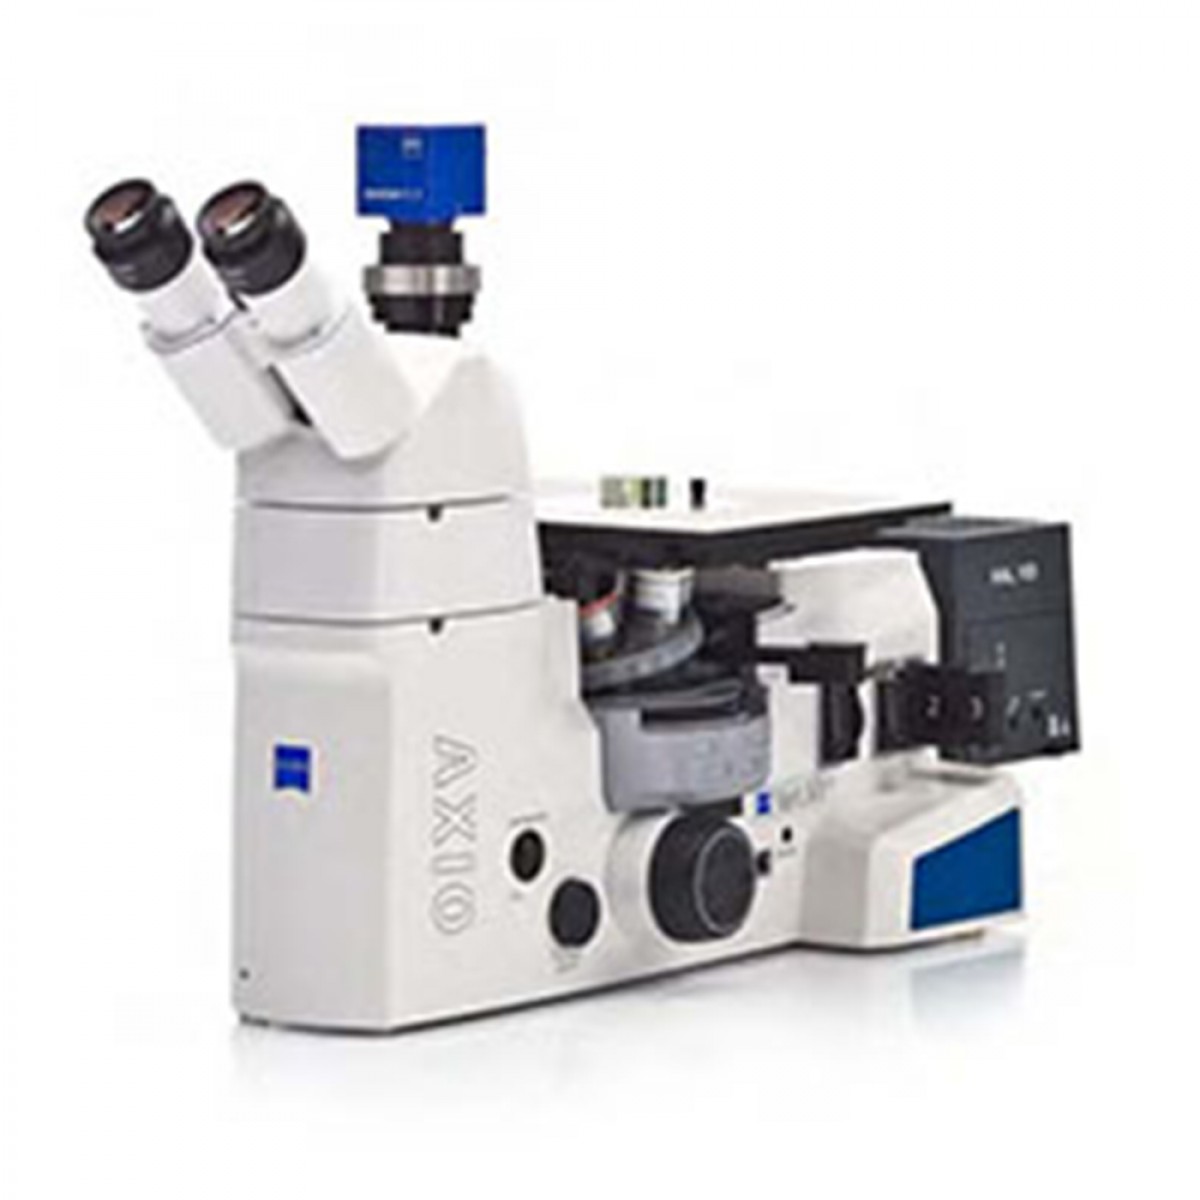 乐克严选 LEKOC 蔡司Axio Vert.A1研究级生物显微镜用于材料研究